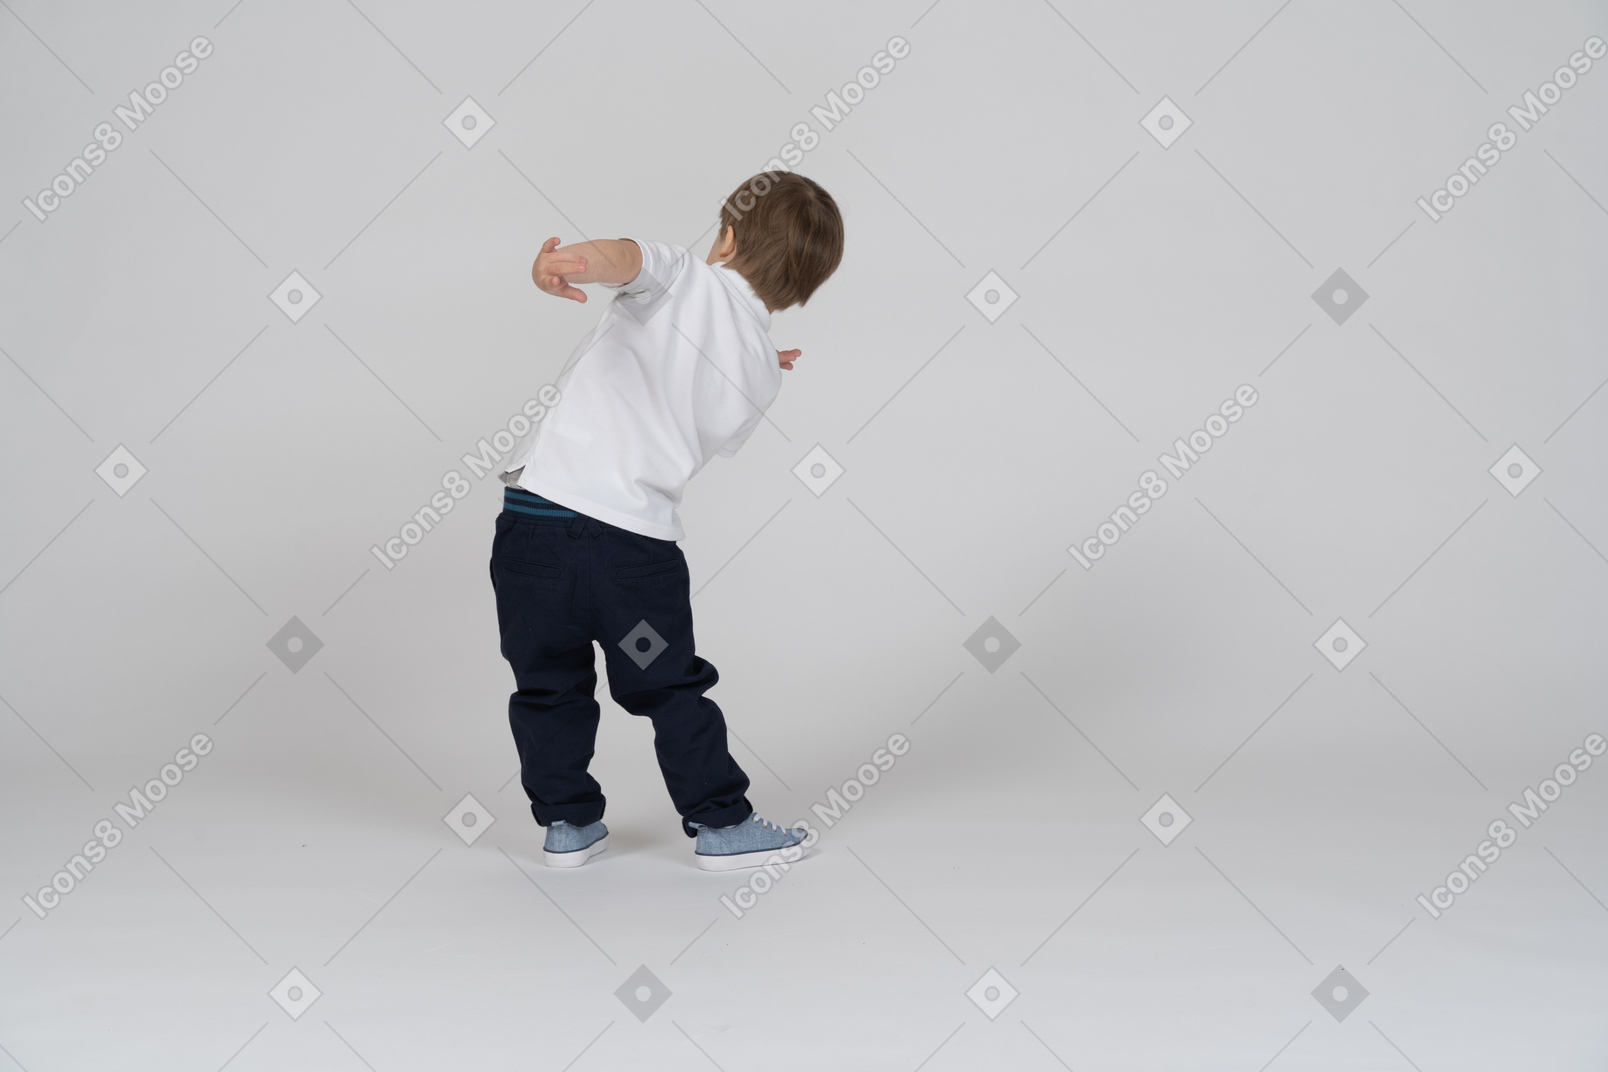 Vista traseira de um menino estendendo um braço atrás das costas